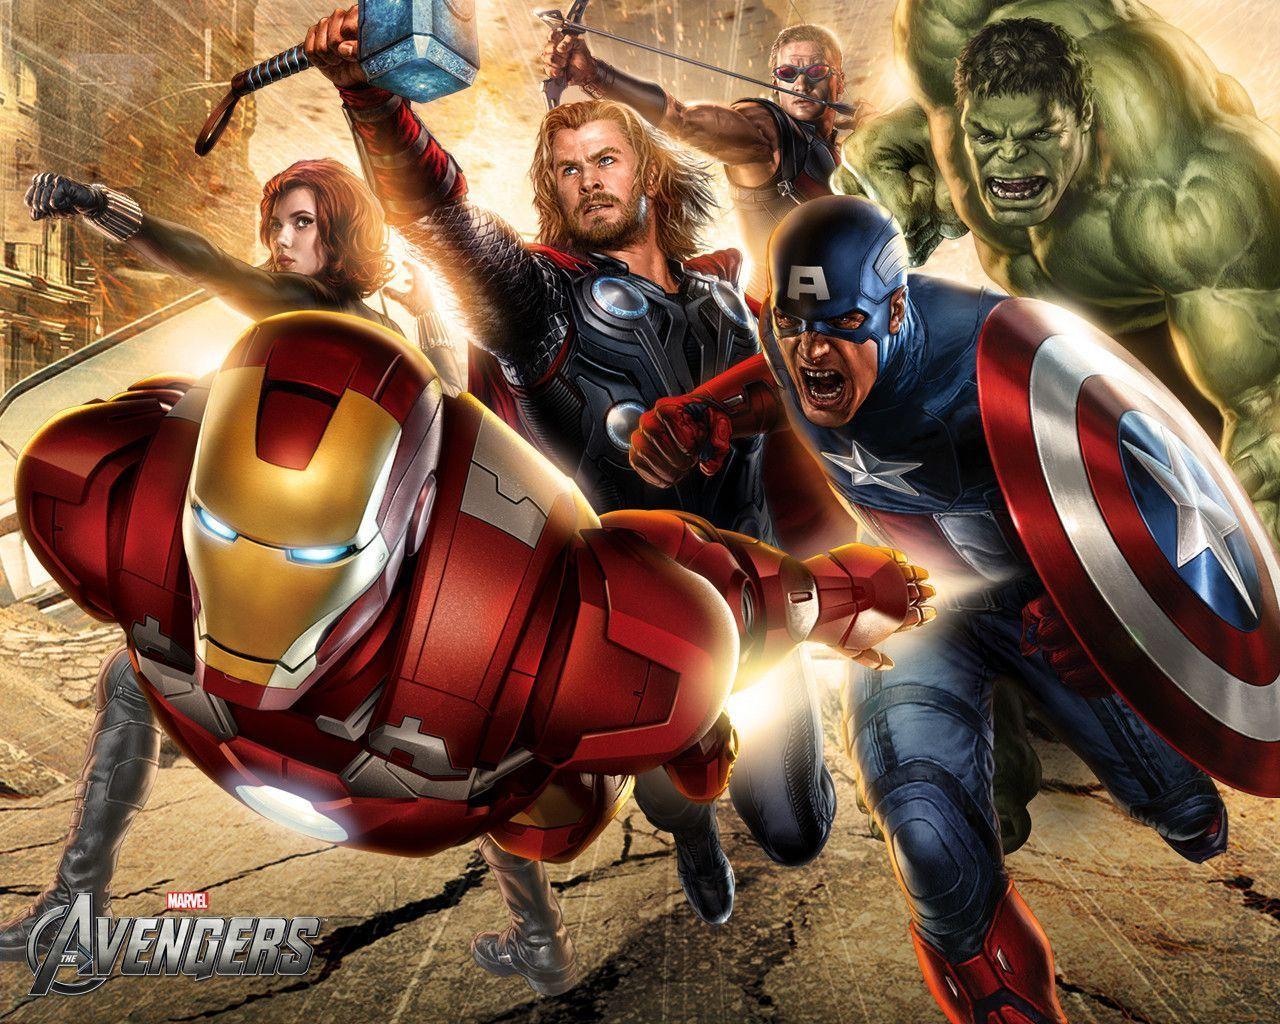 Marvel Avengers "R" Us